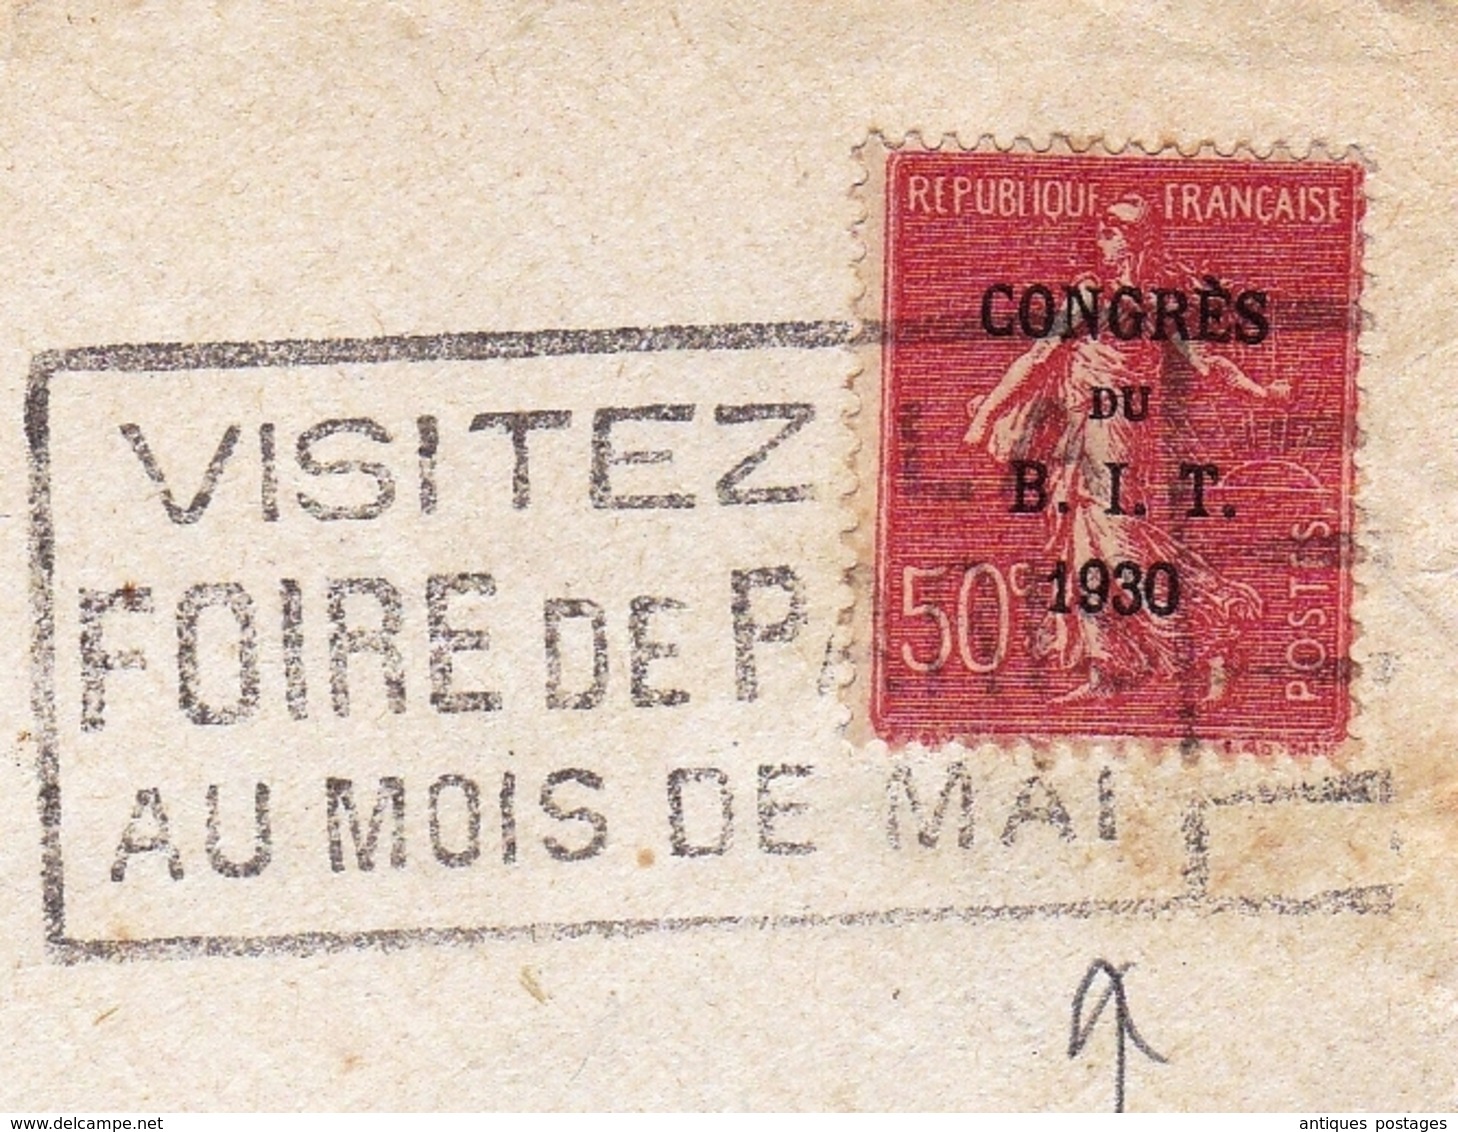 Lettre Paris Congrès Du B.I.T. 1930 Flamme Foire De Paris Bureau International Du Travail - Mechanical Postmarks (Advertisement)